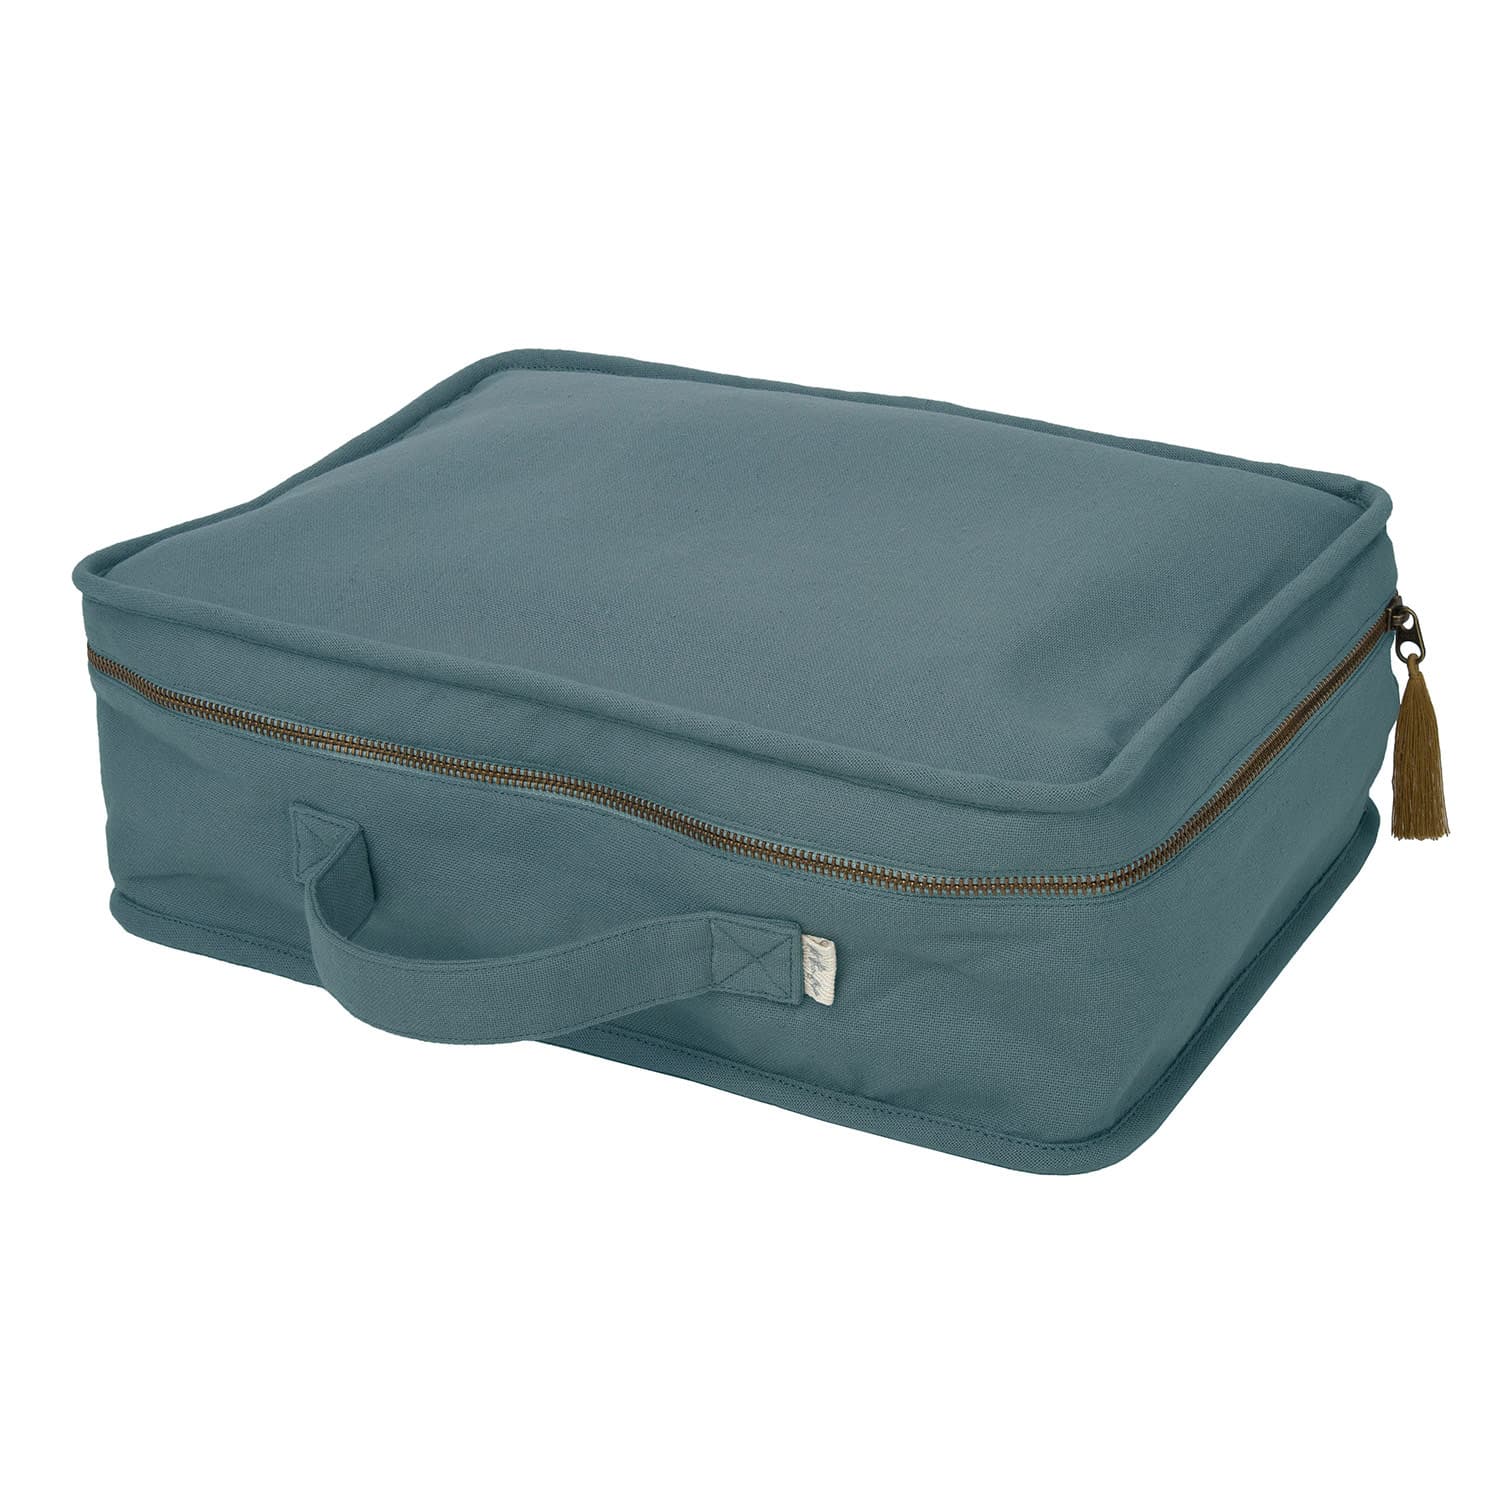 Numero 74 - Suitcase - Medium - Ice Blue - S032